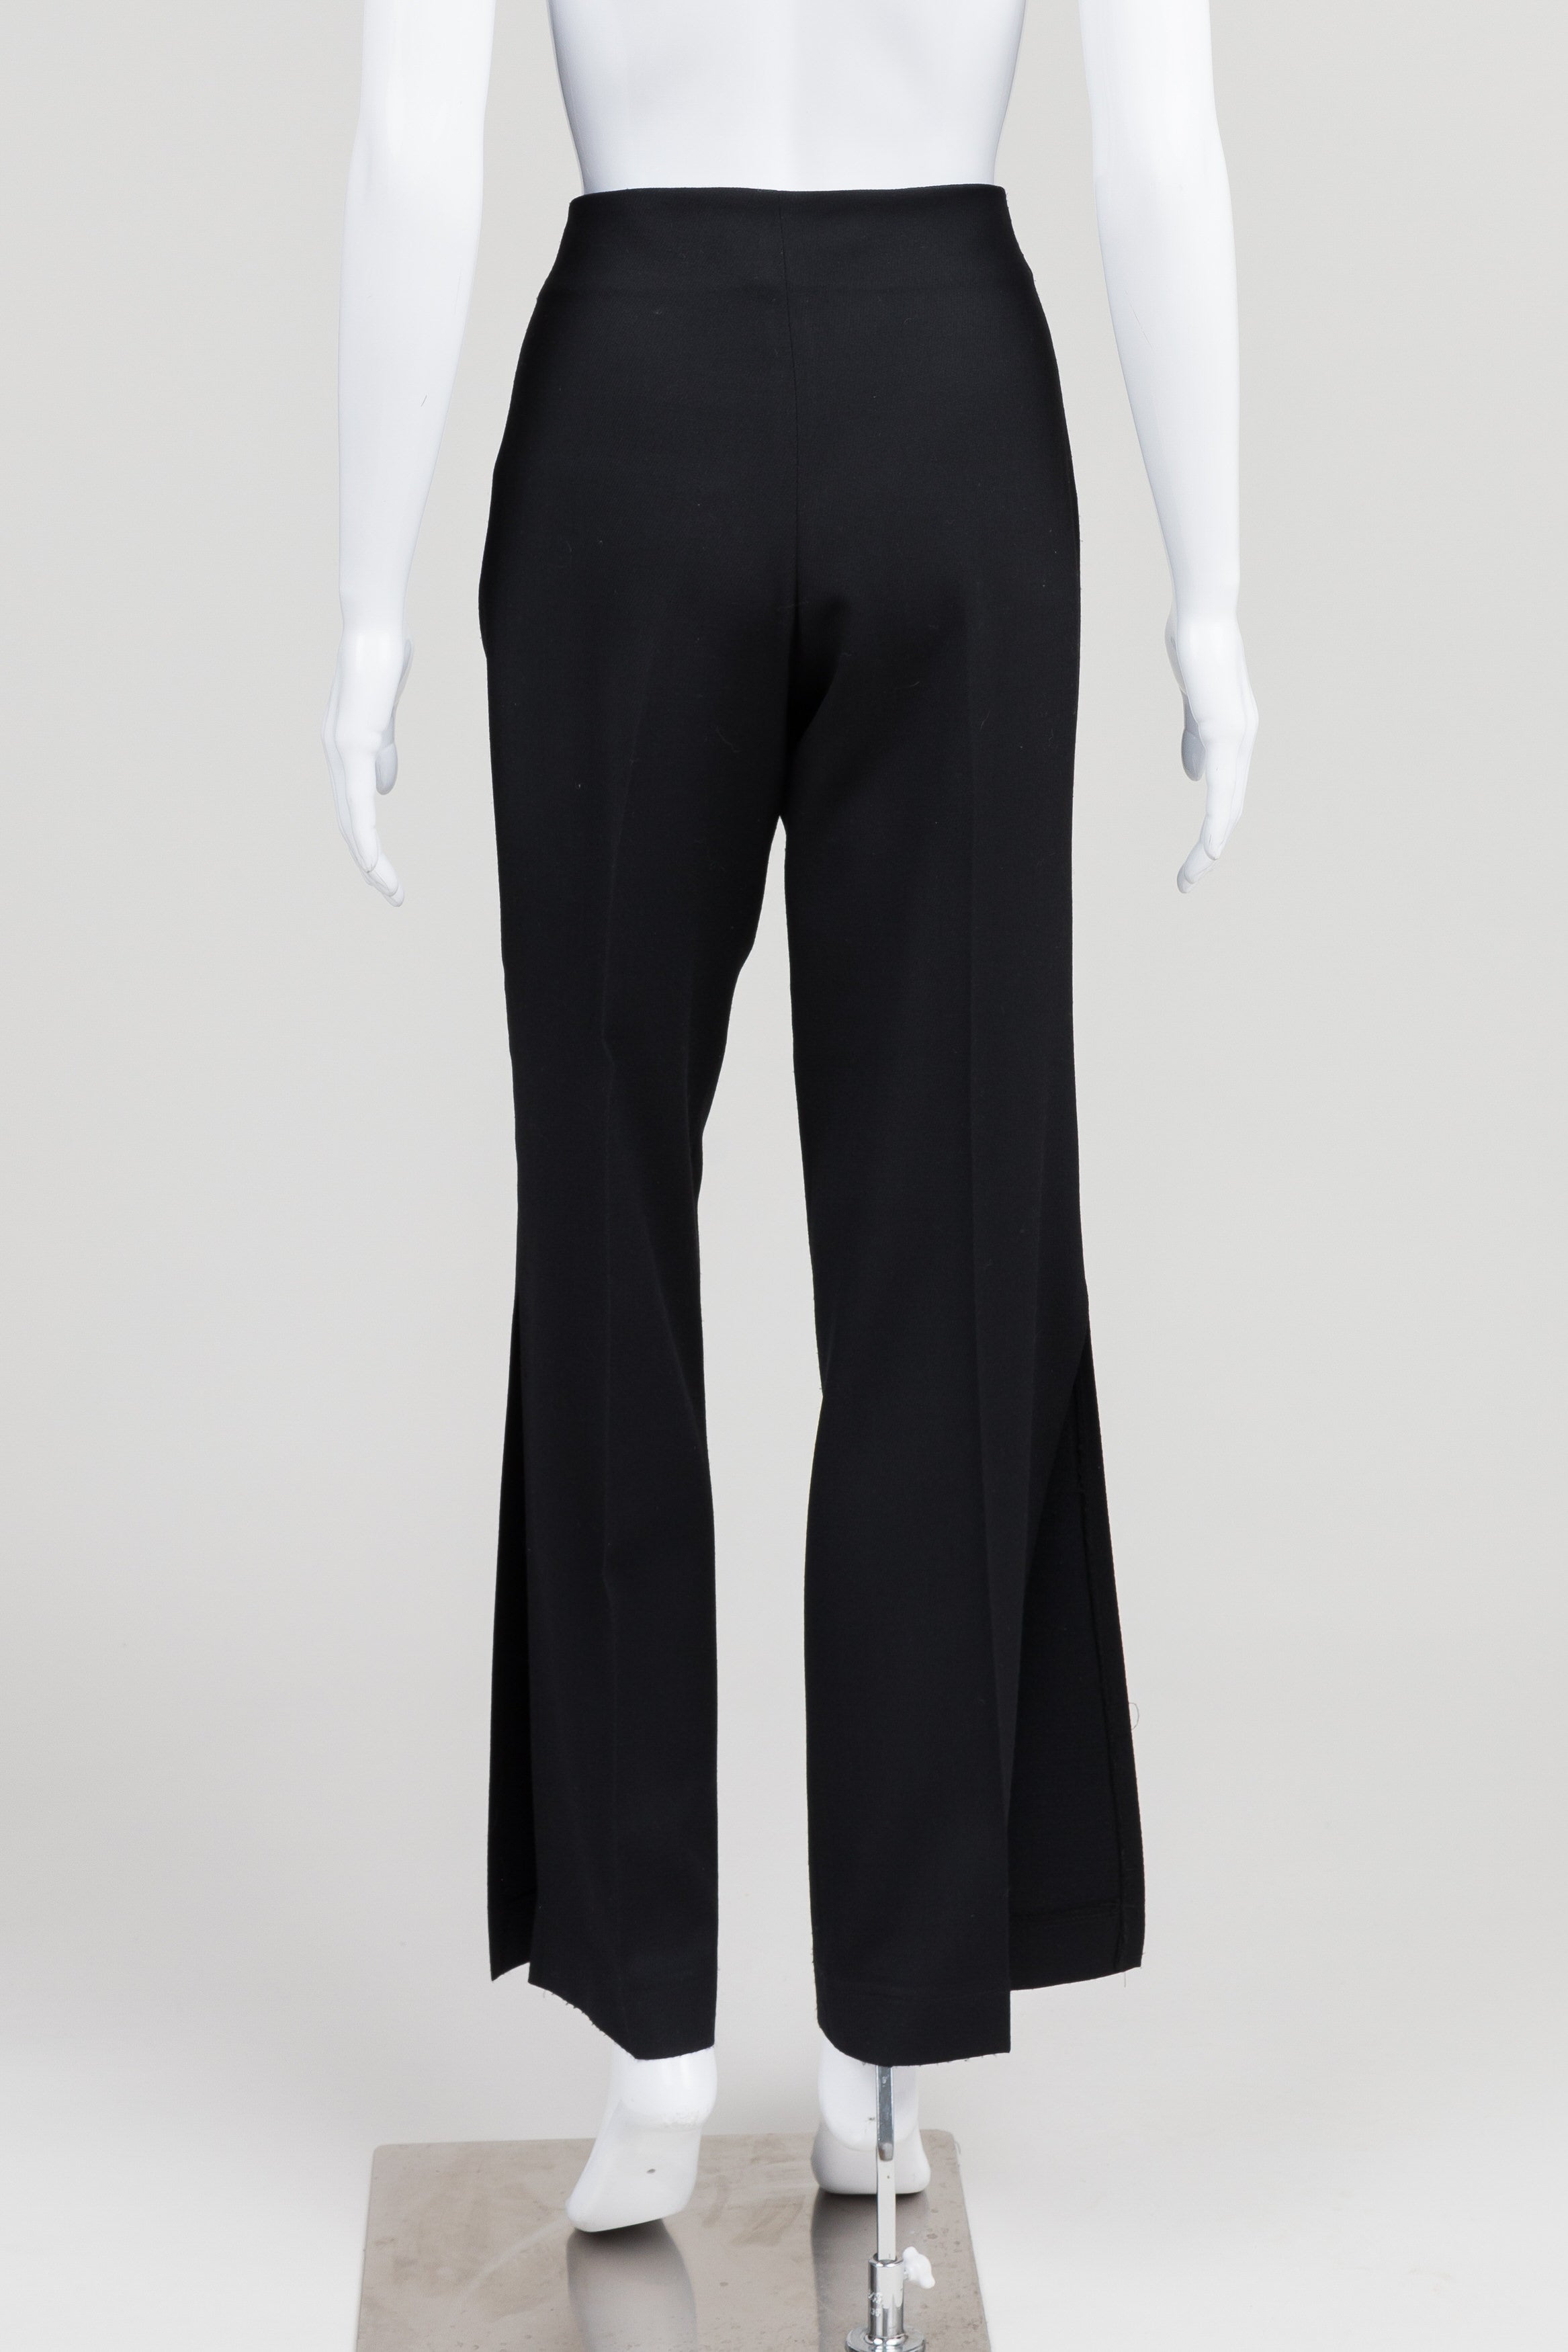 Jacqueline Conoir black dress pant with side leg split (6)